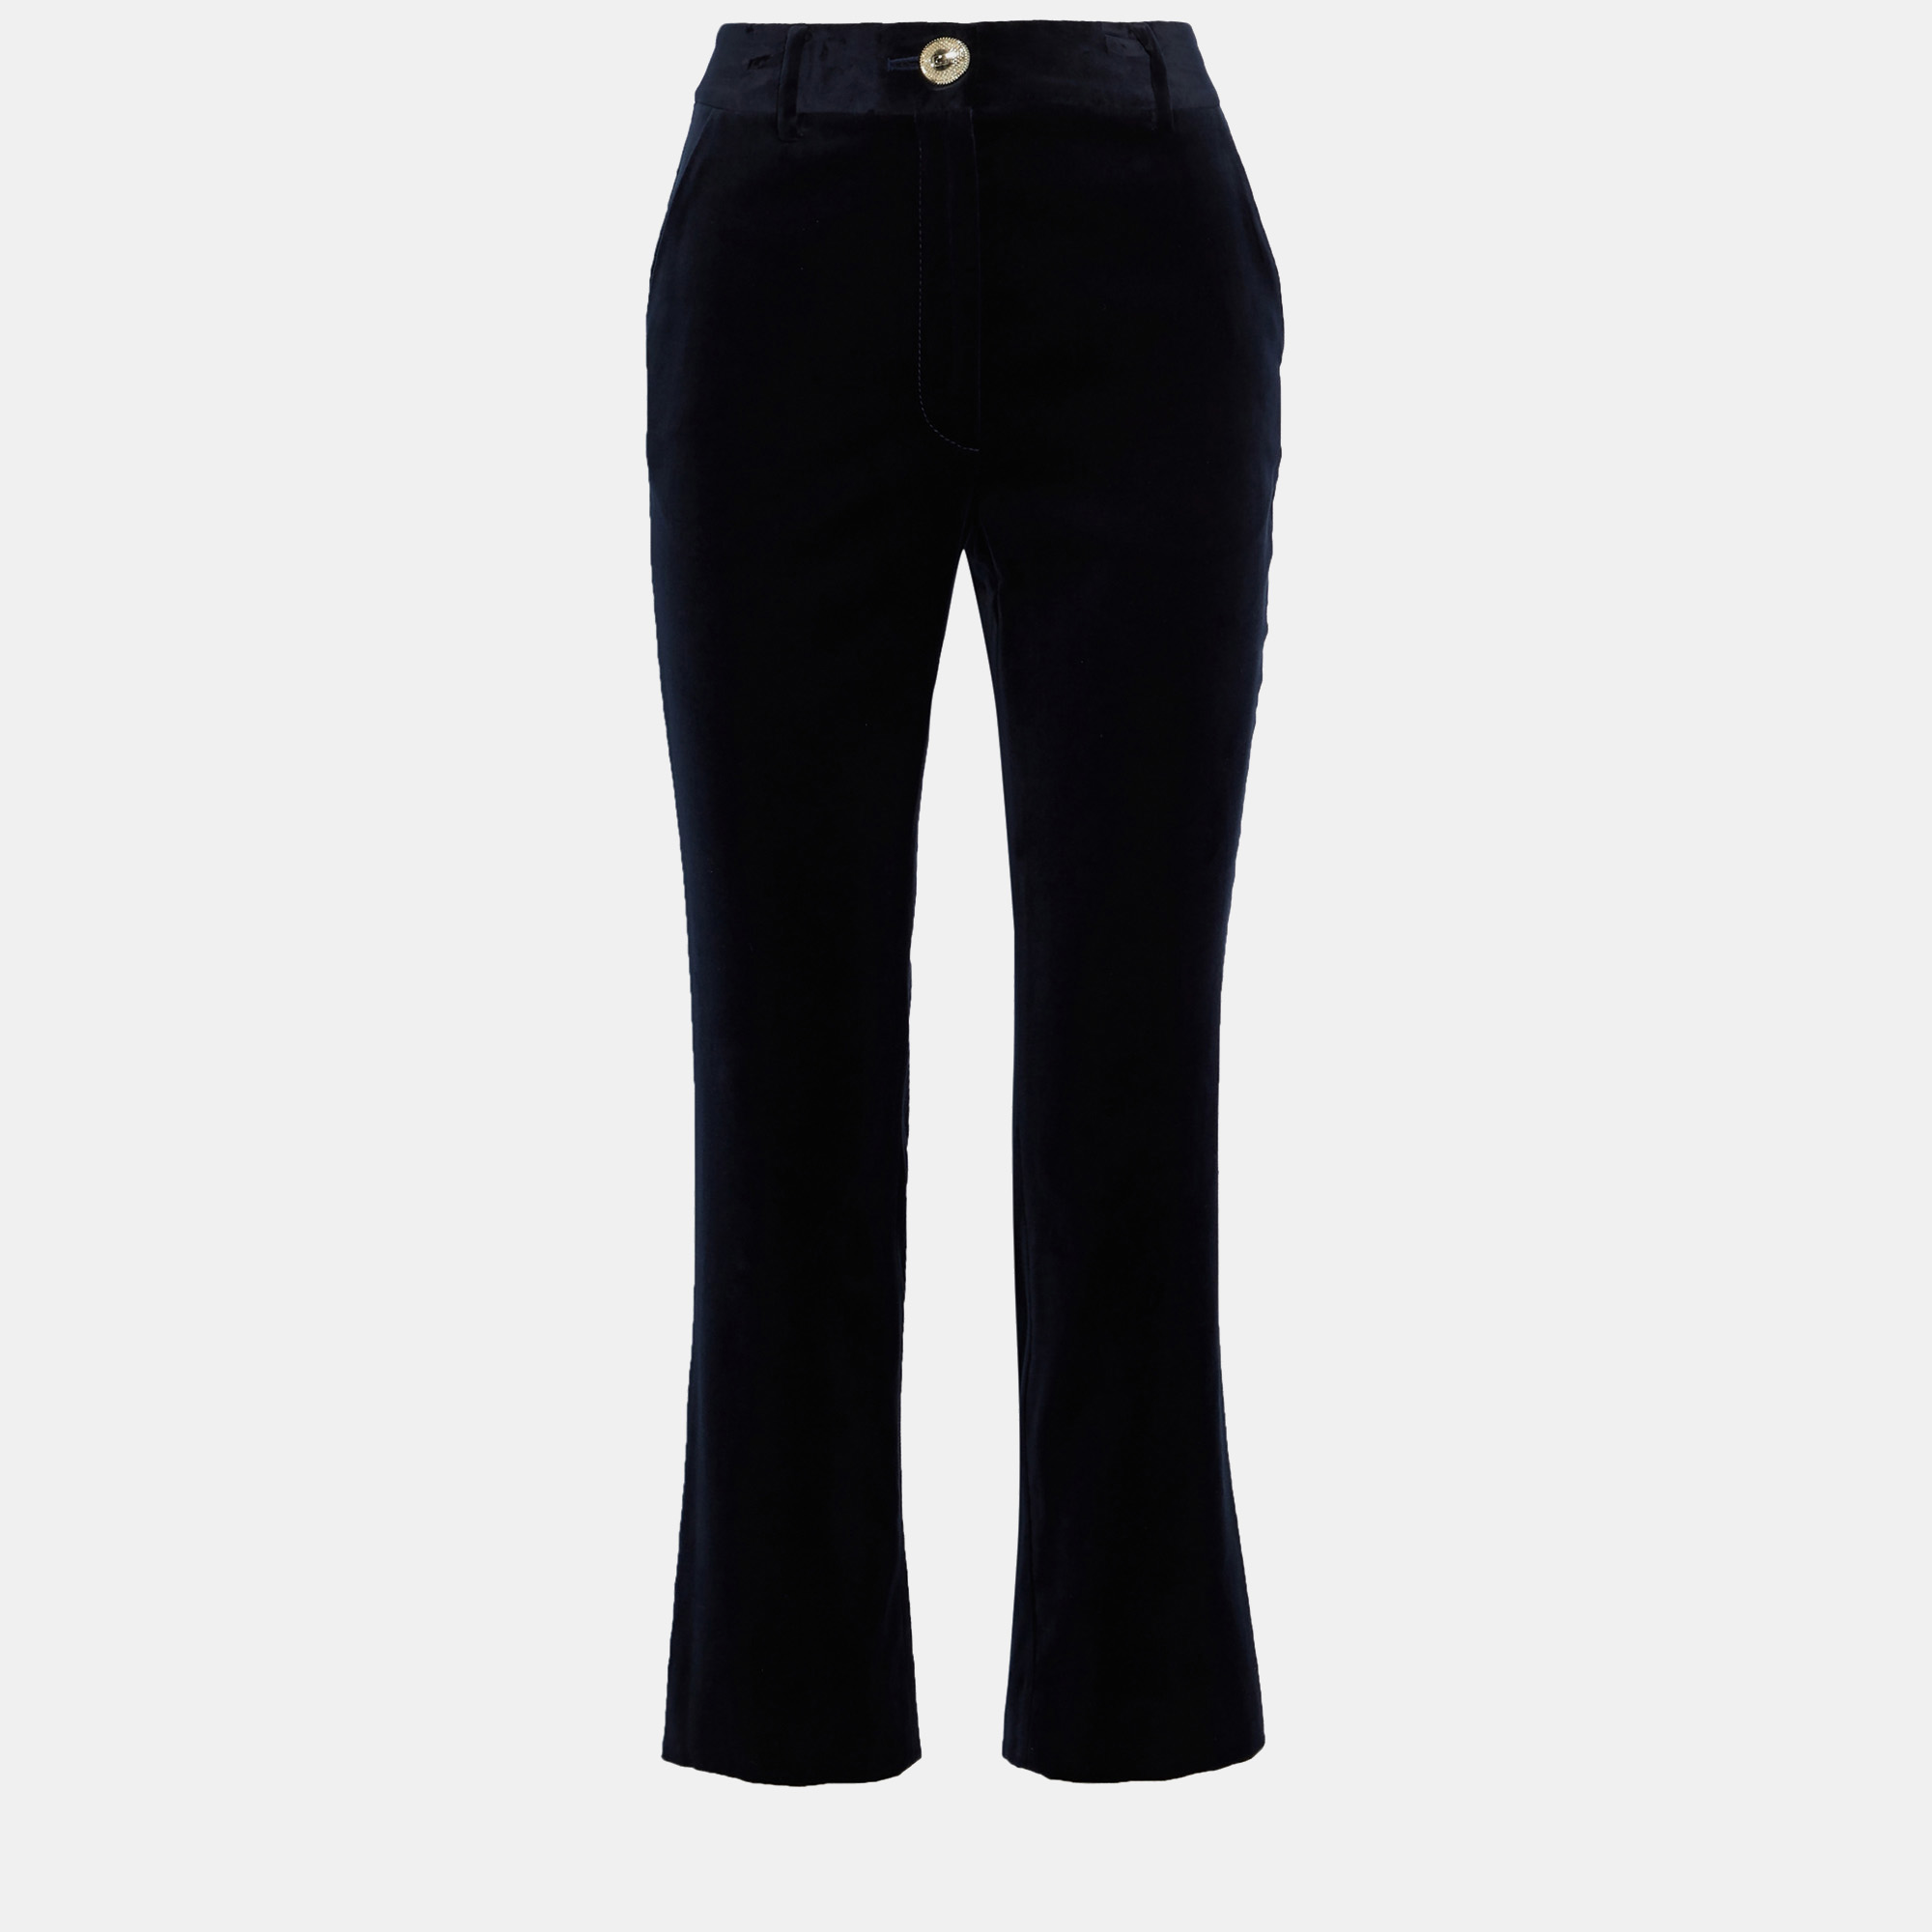 Diane von furstenberg navy blue velvet pants m (us 6)